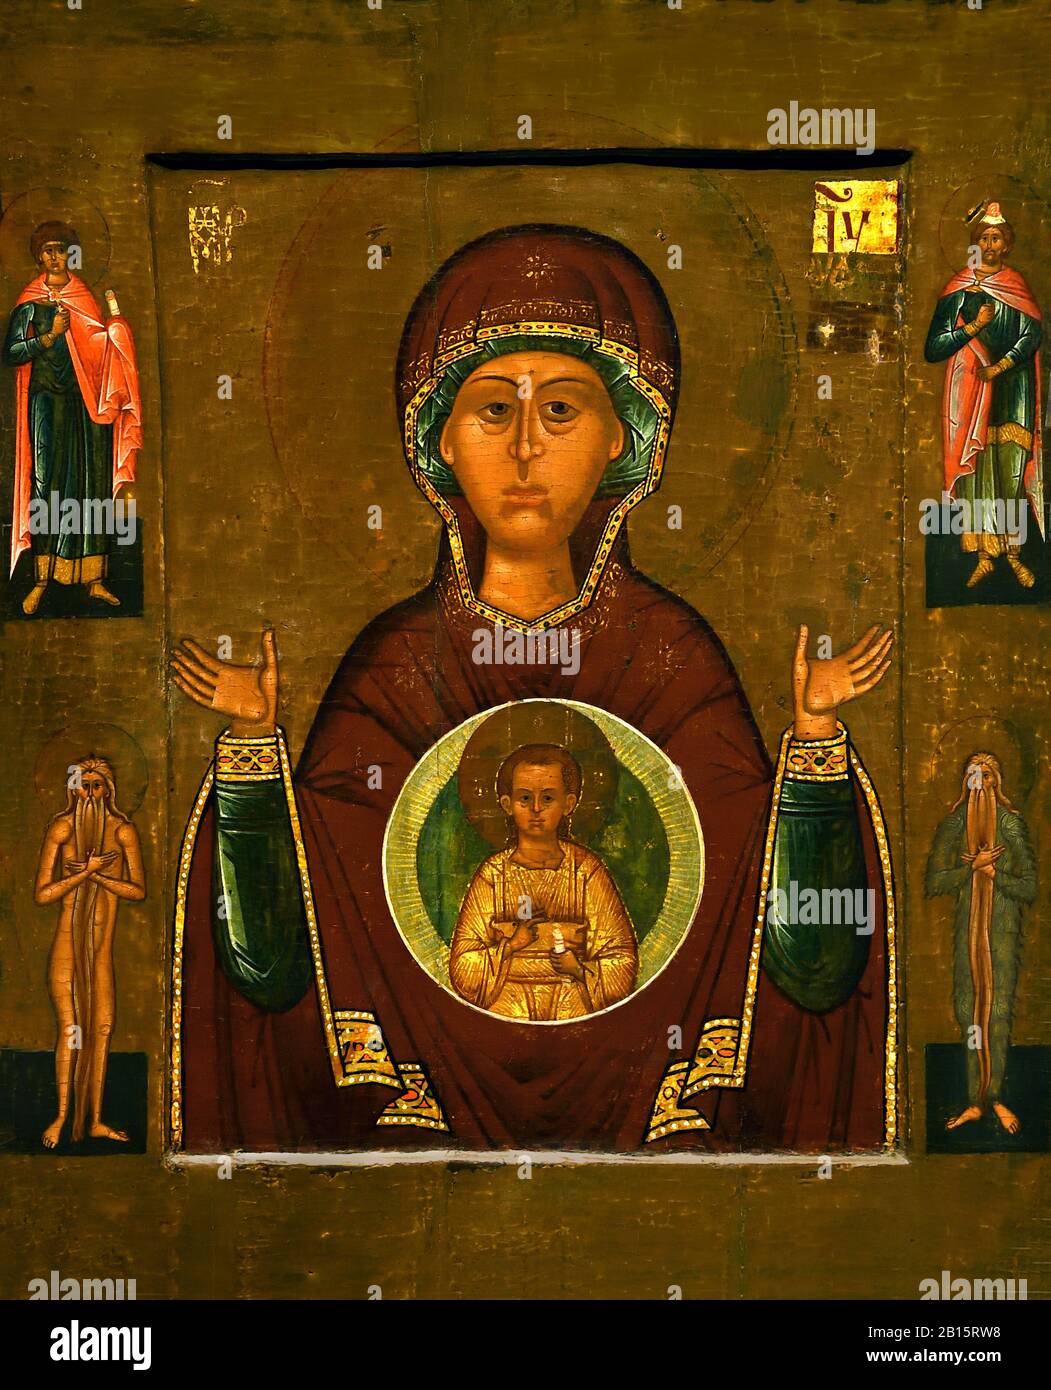 Ikone Der Mutter gottes des heiligen Zeichens 16. Jahrhundert Ende ( Diese Ikone ist eine Kopie der Wunderwirkungssymbole, die die Stadt Nowgorod rettete) Russland, Russland, Föderation, Stockfoto